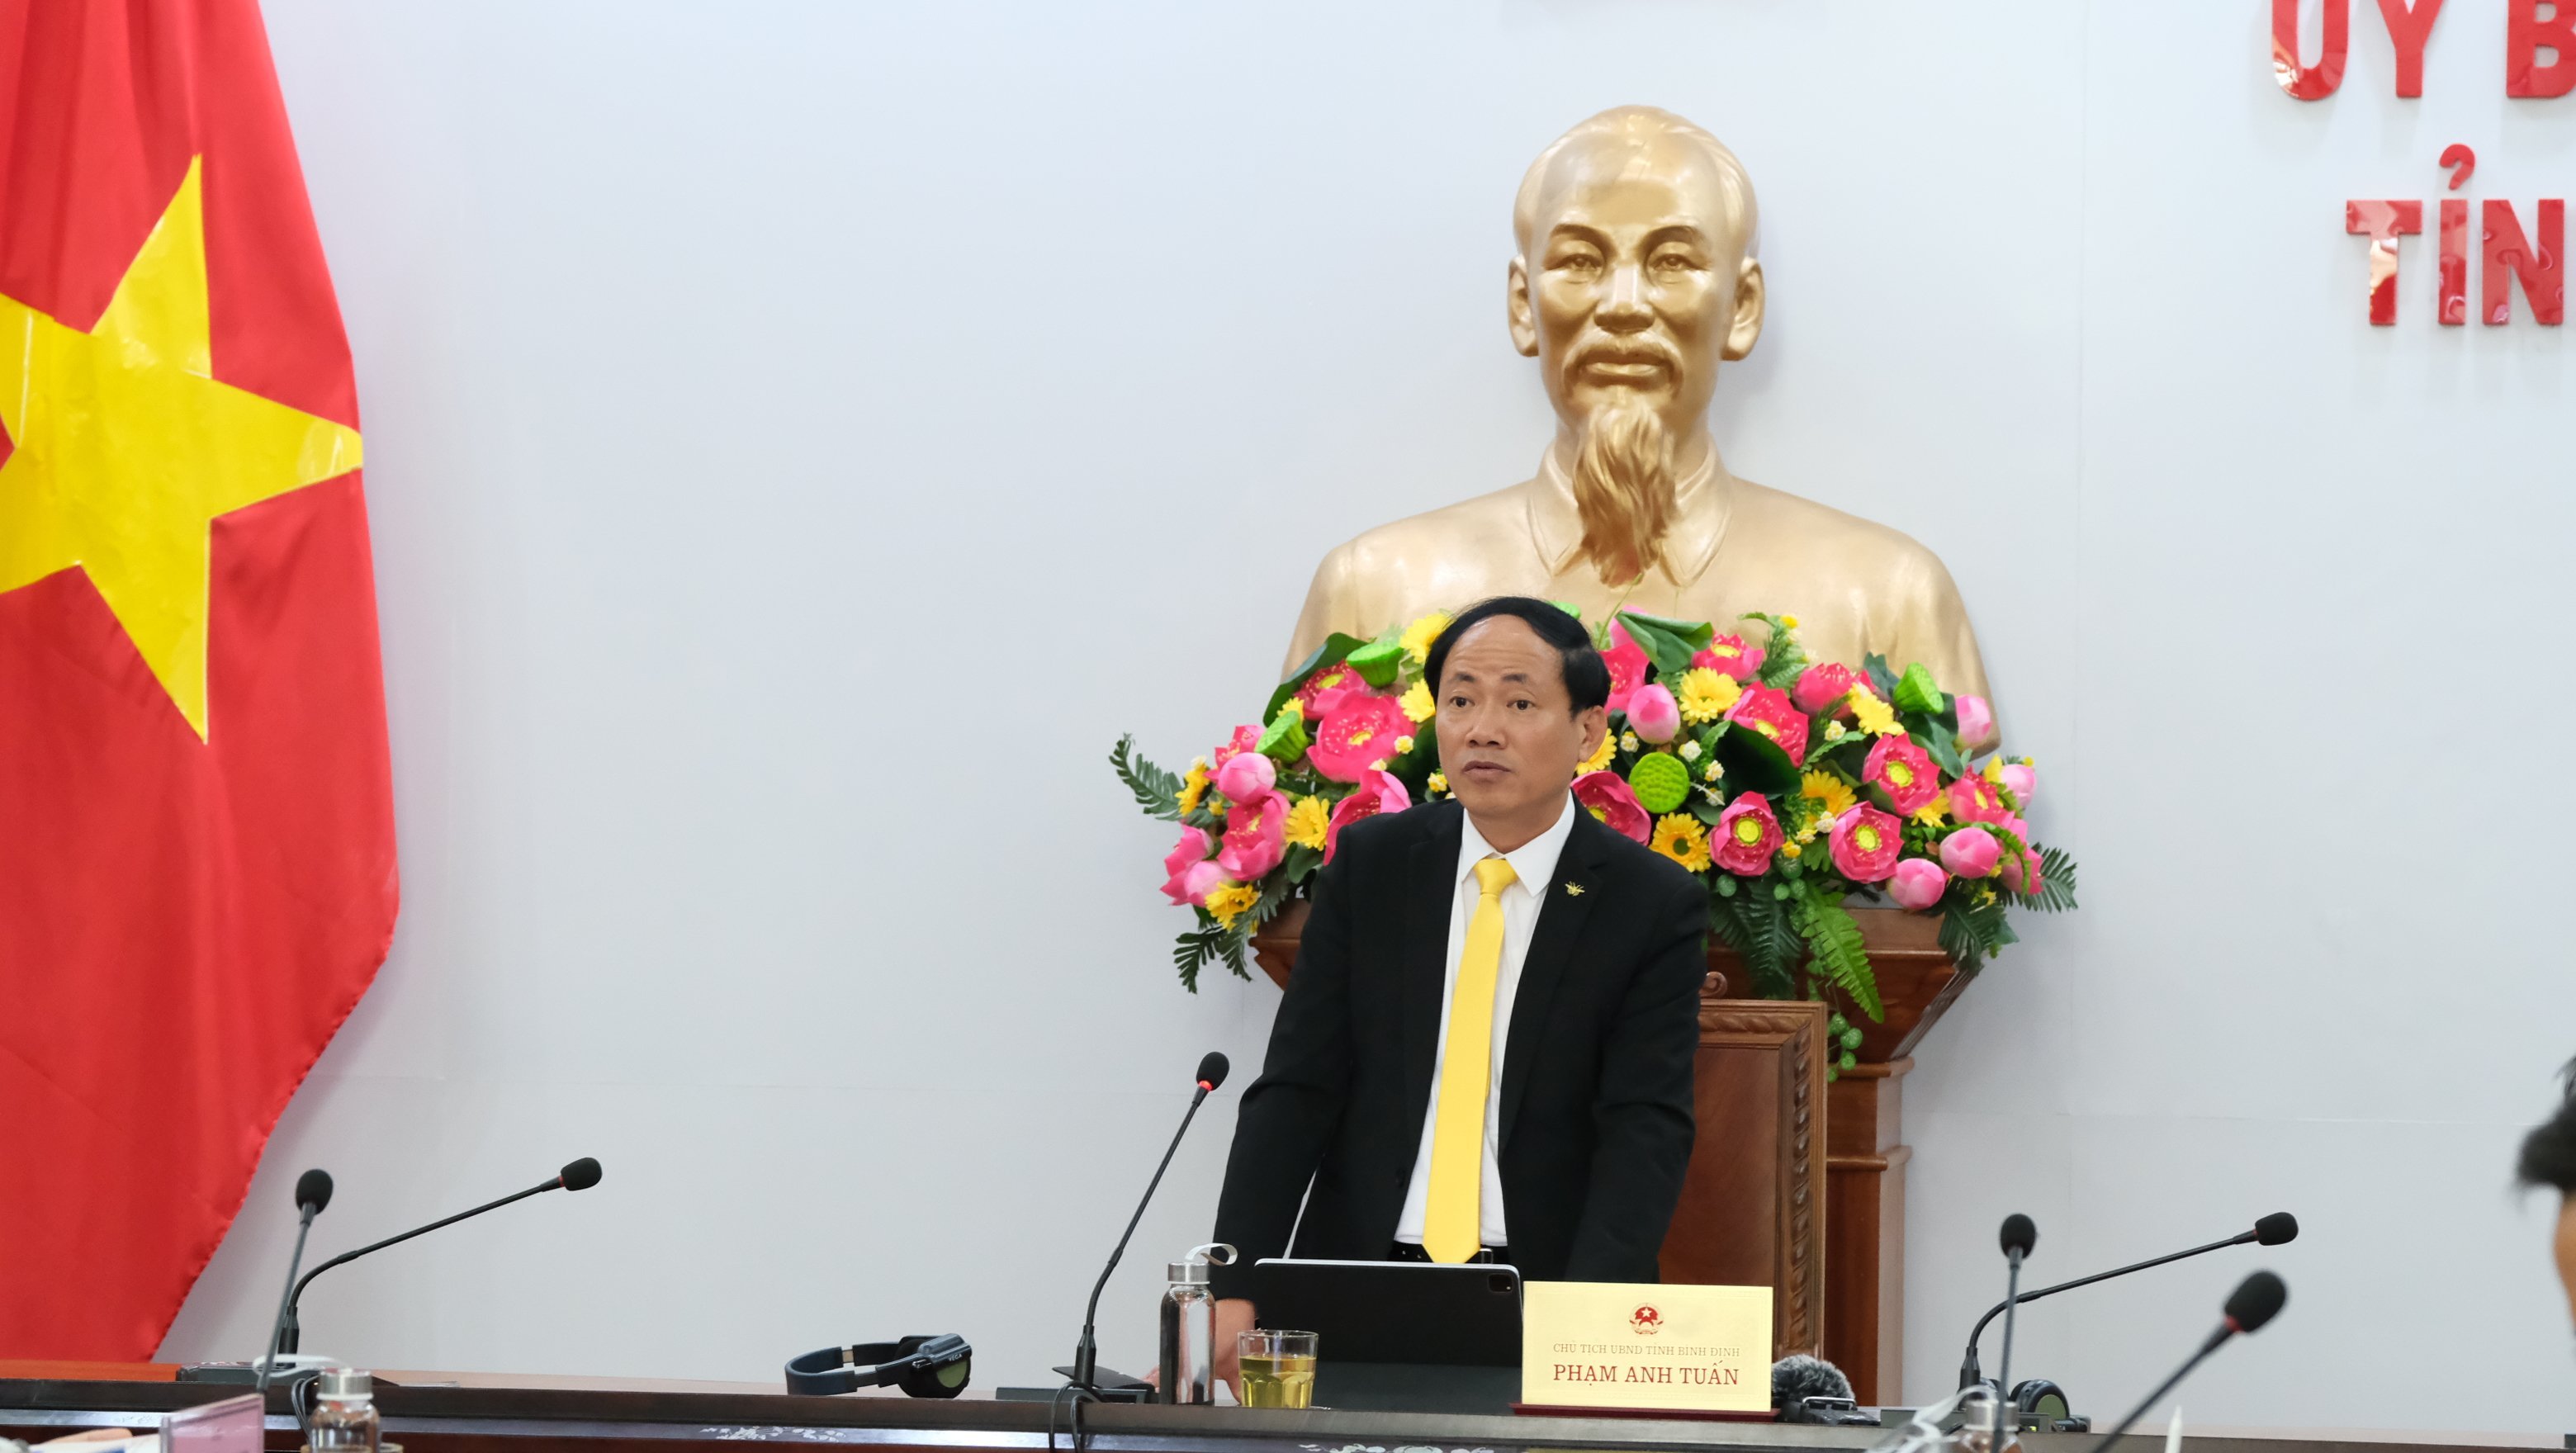 Đồng chí Phạm Anh Tuấn – Chủ tịch UBND tỉnh Bình Định tại Hội nghị.